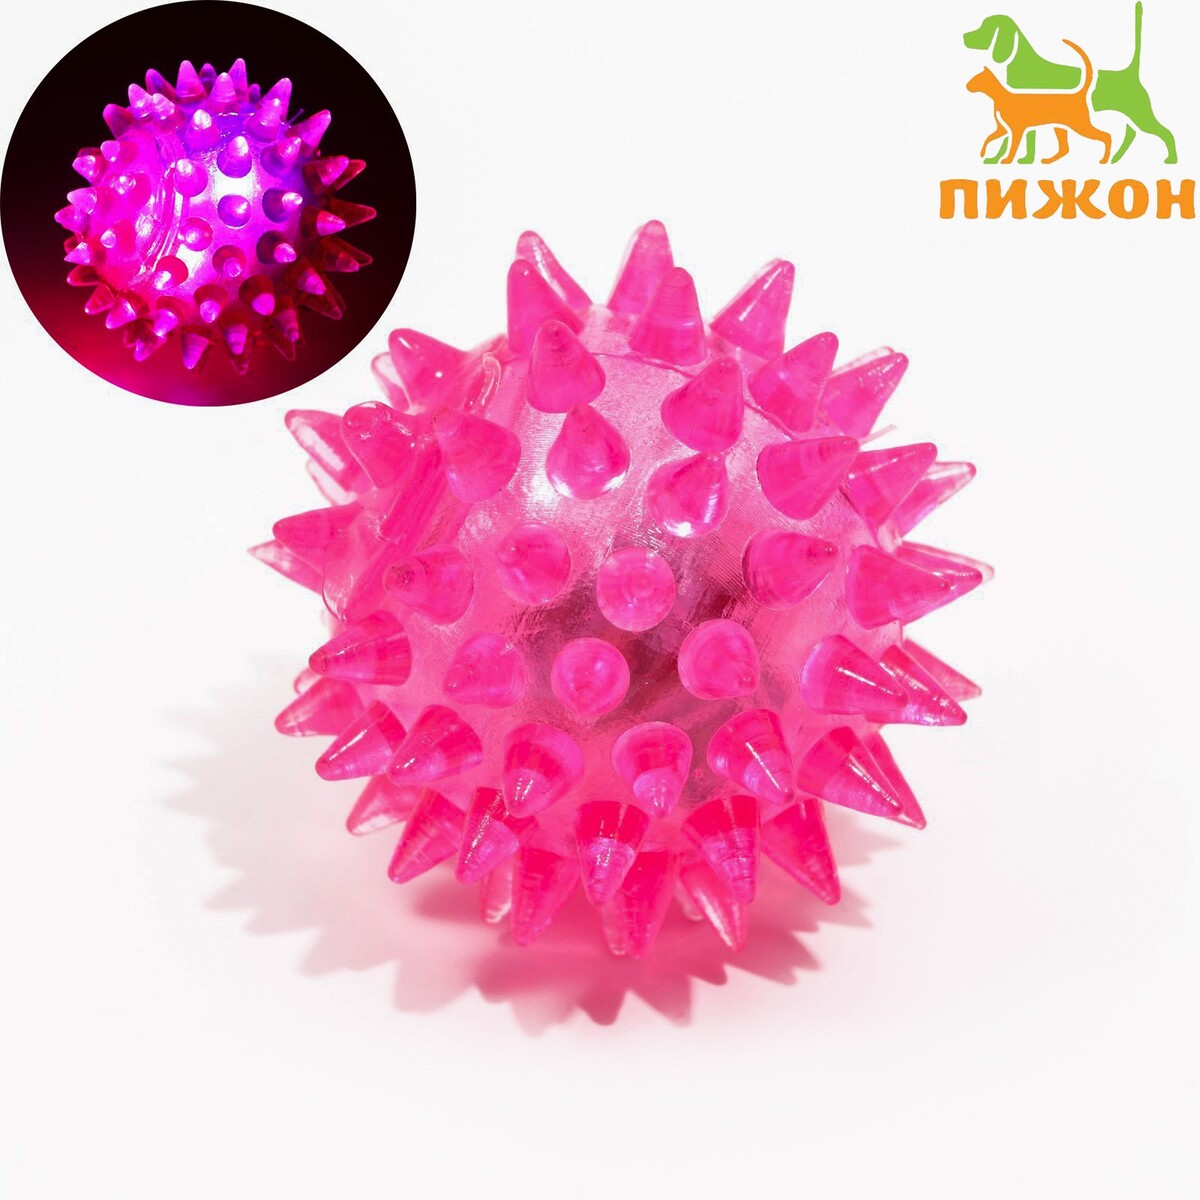 Мяч светящийся для животных малый, tpr, 4,5 см, розовый Пижон 01222115 - фото 1